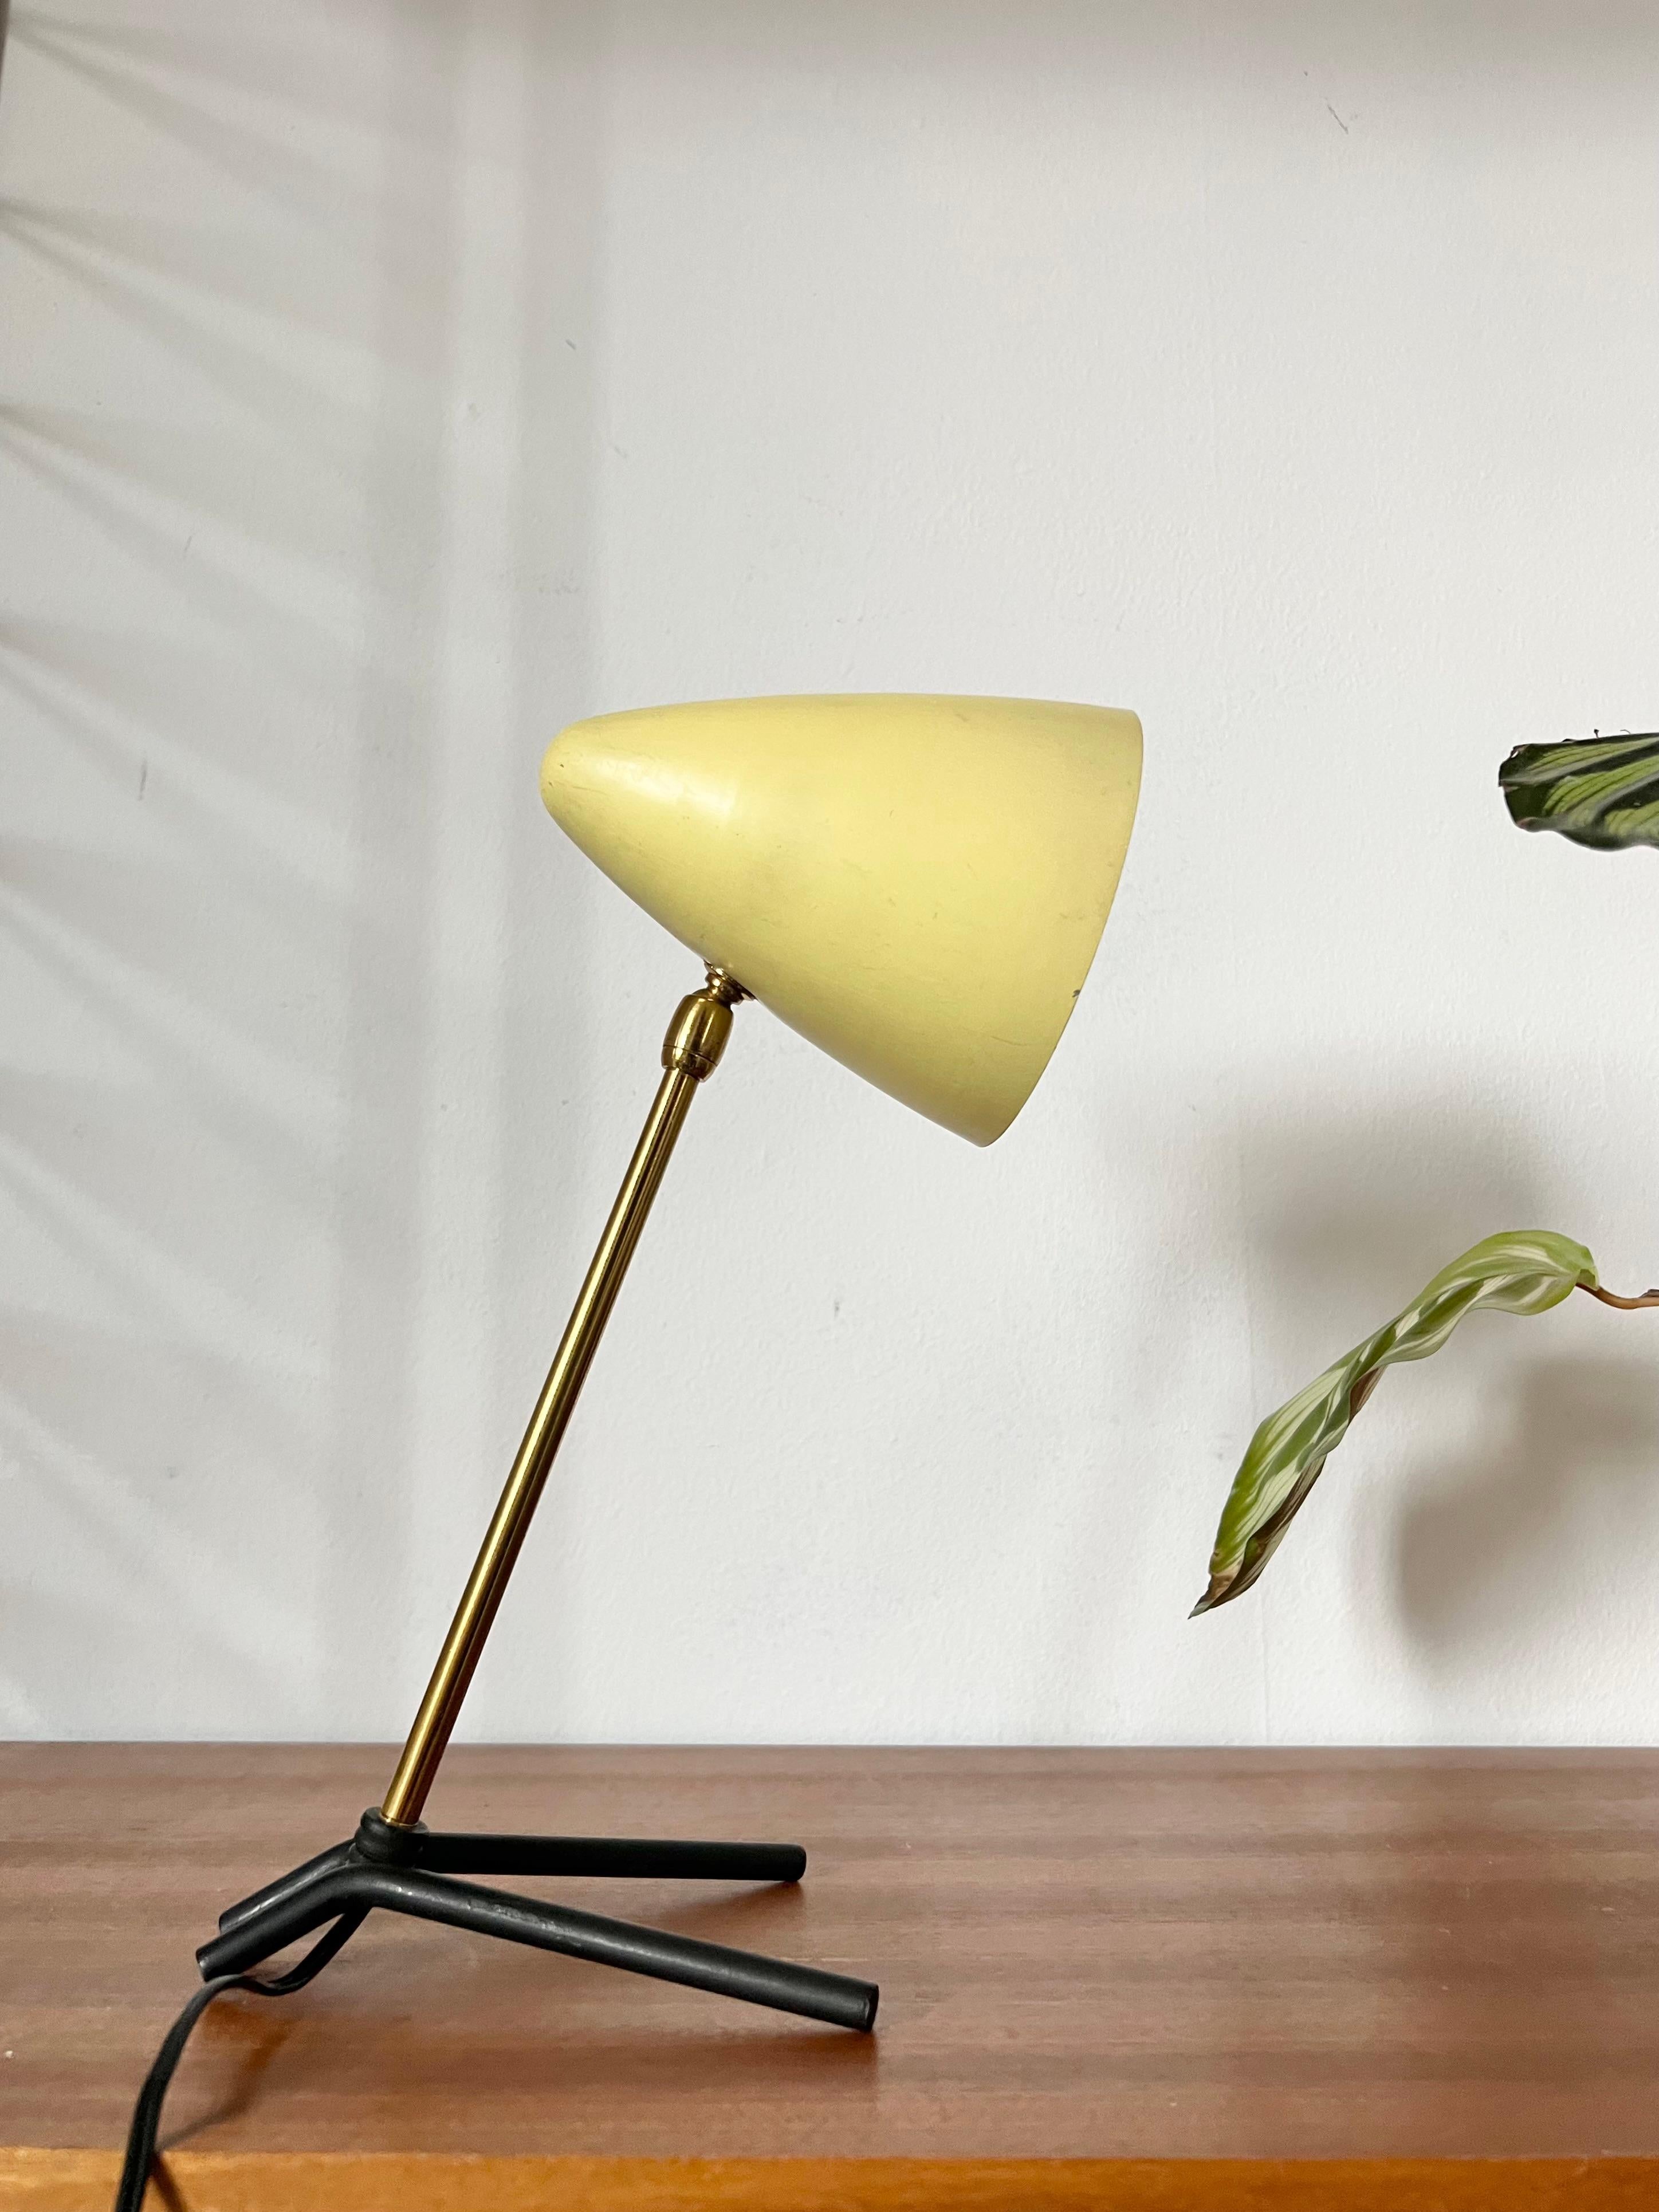 Mid Century Tripod Lampe im Stil von Ostuni.

Produziert in Italien in den 50er Jahren. 

Ein blassgelb lackierter Kegel-Lampenschirm auf einem verstellbaren Messingarm mit schwarz lackierten Bogenfüßen.  
Guter Originalzustand mit einigen